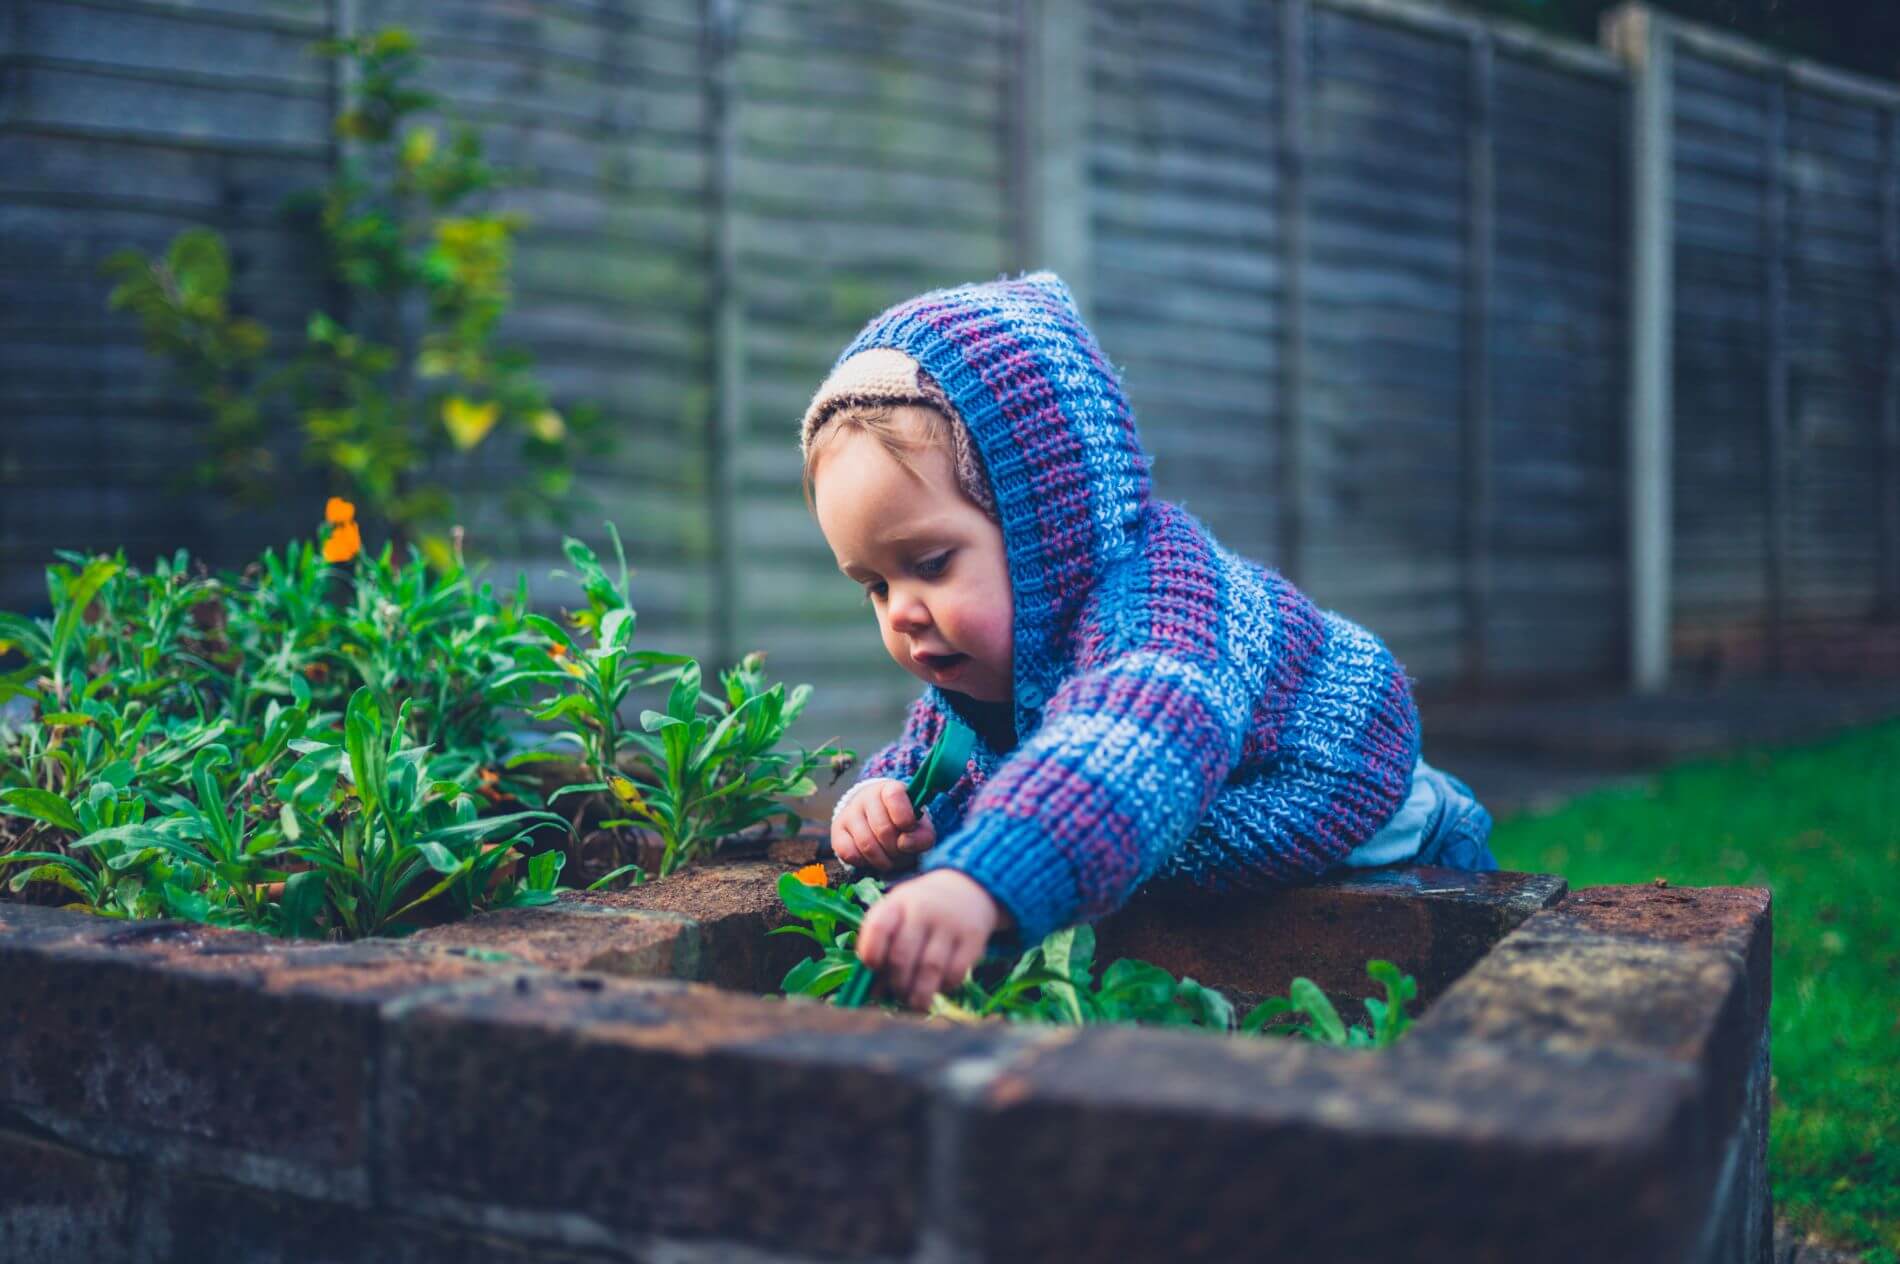 Toddler playing in backyard garden.